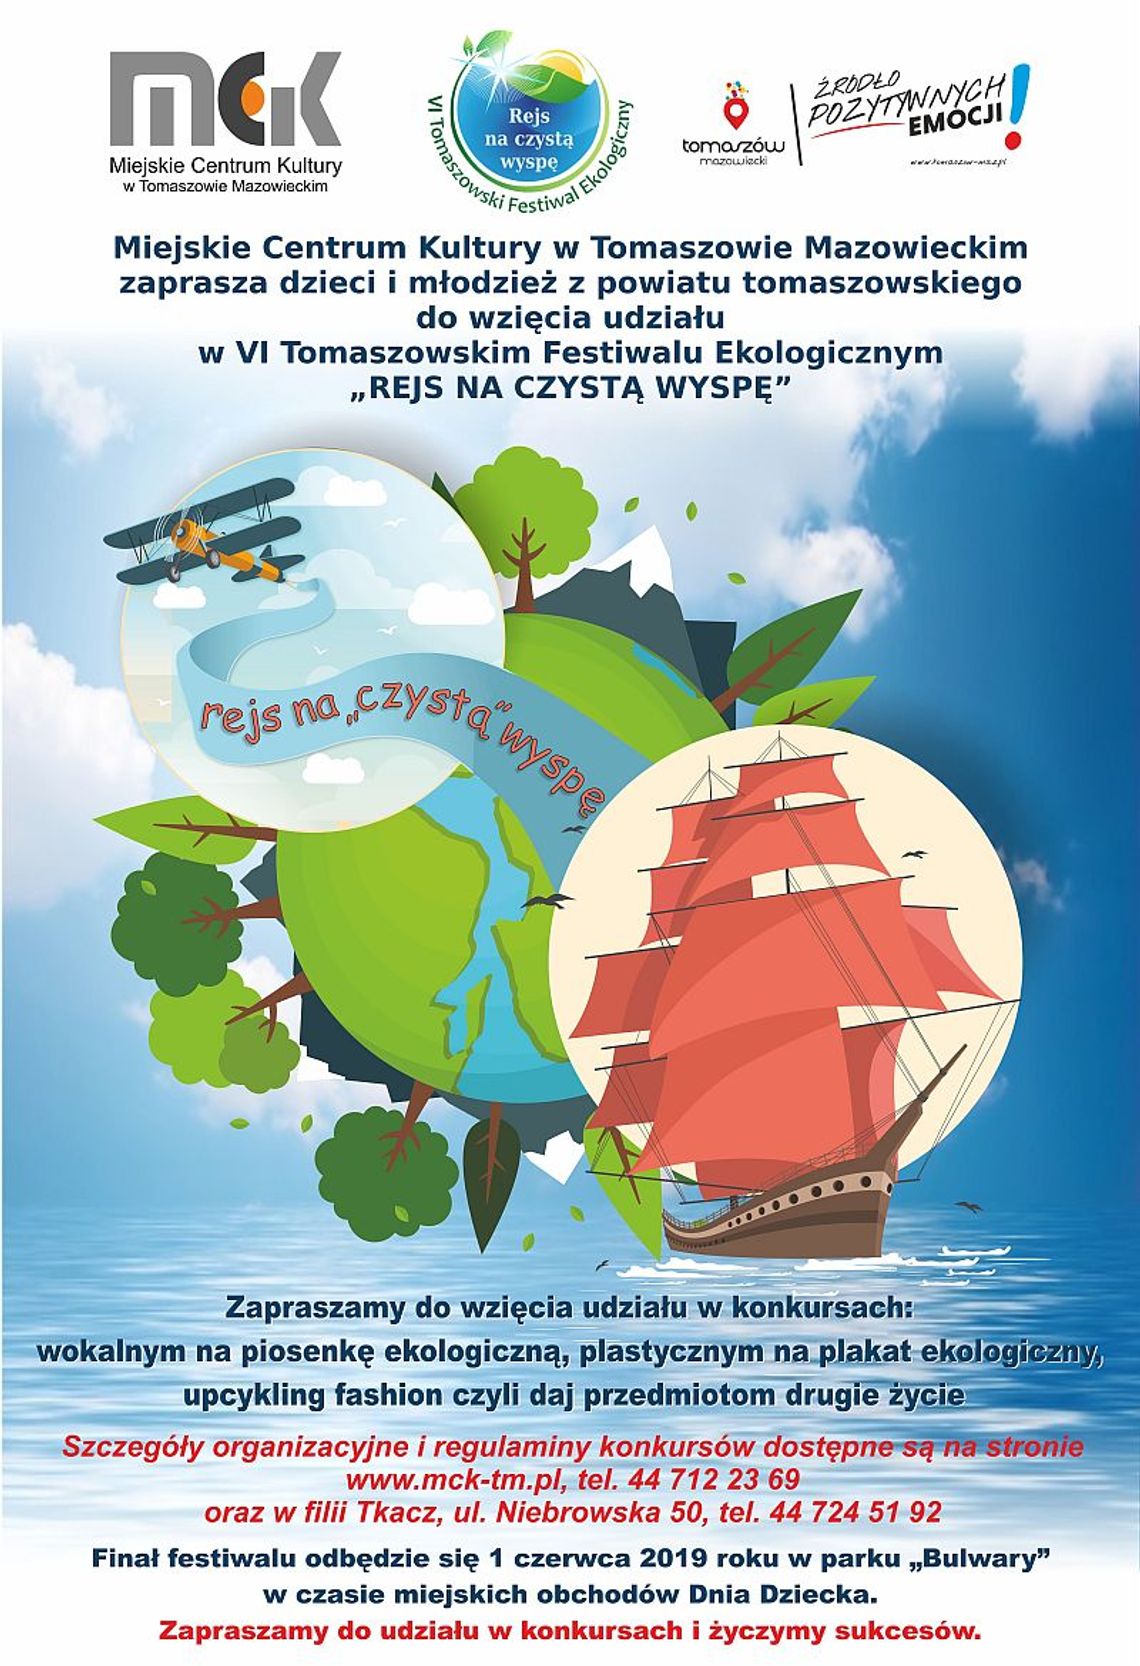 VI Tomaszowski Festiwal Ekologiczny „Rejs na czystą wyspę”  - eliminacje w kategorii piosenka